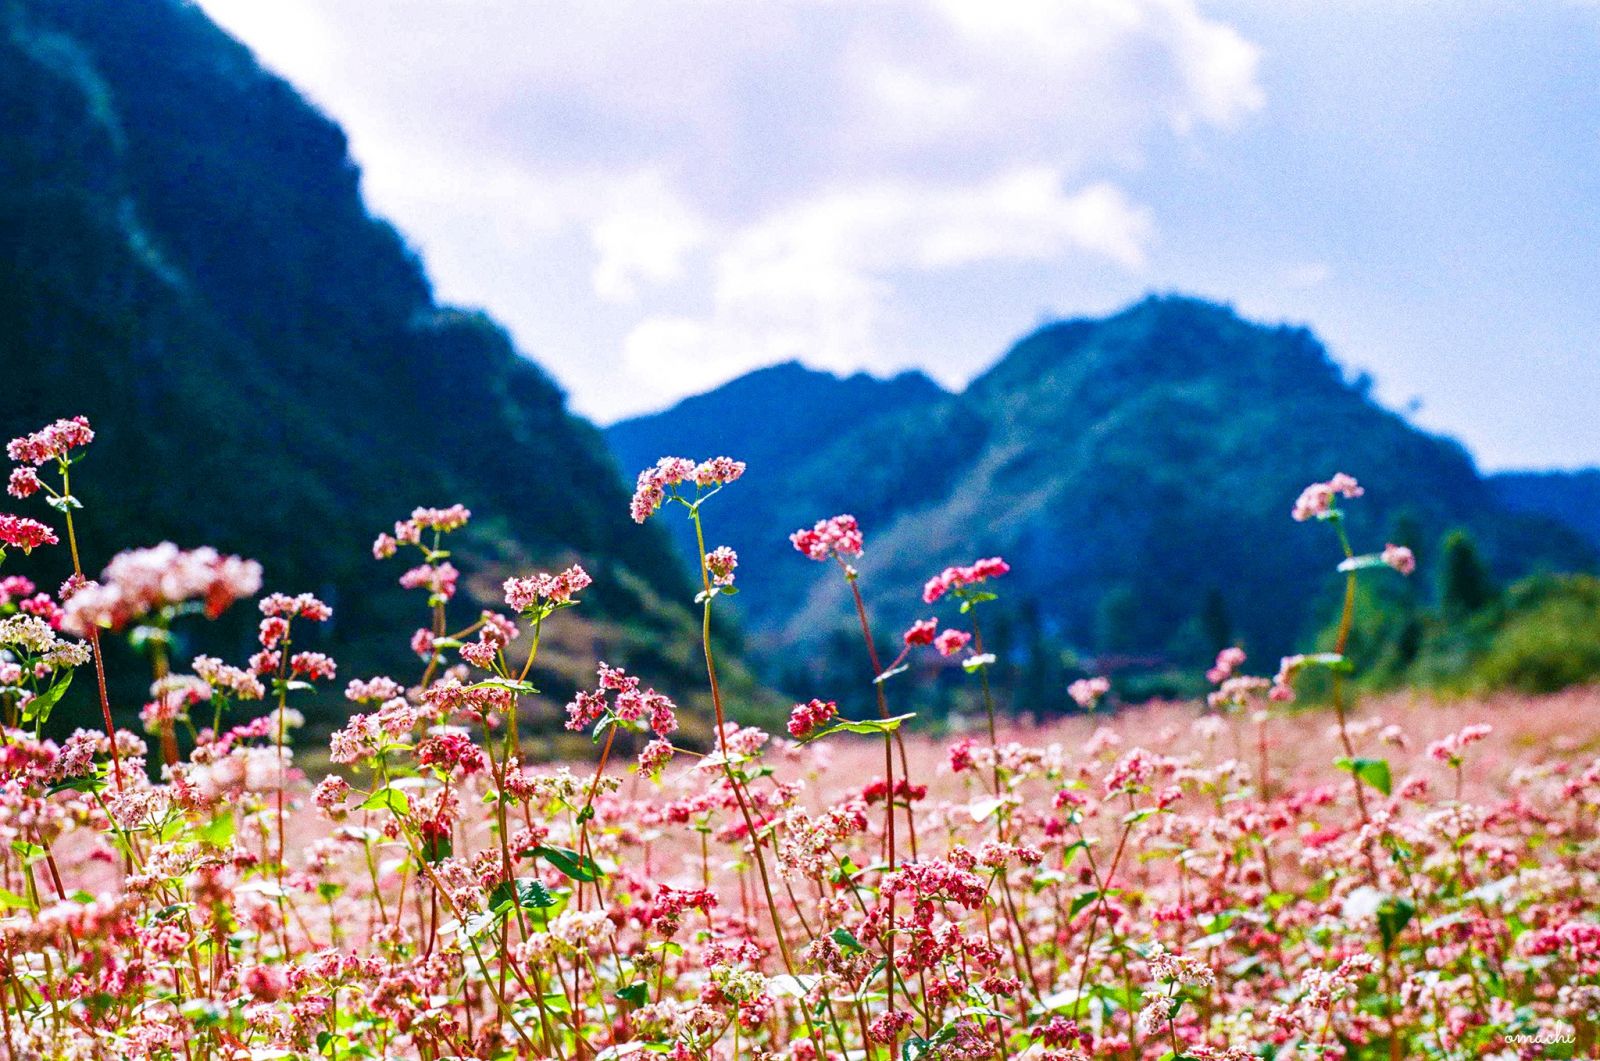 Hãy cùng khám phá mùa đẹp nhất ở Hà Giang qua hình ảnh. Sắc đỏ của hoa tam giác mạch nở rộ trên những cánh đồng rộng lớn, những ngôi nhà sàn được bao phủ bởi sương mù, hãy để chúng tôi đưa bạn trở về với một Hà Giang hoang sơ, mộc mạc nhưng cũng rất đẹp.